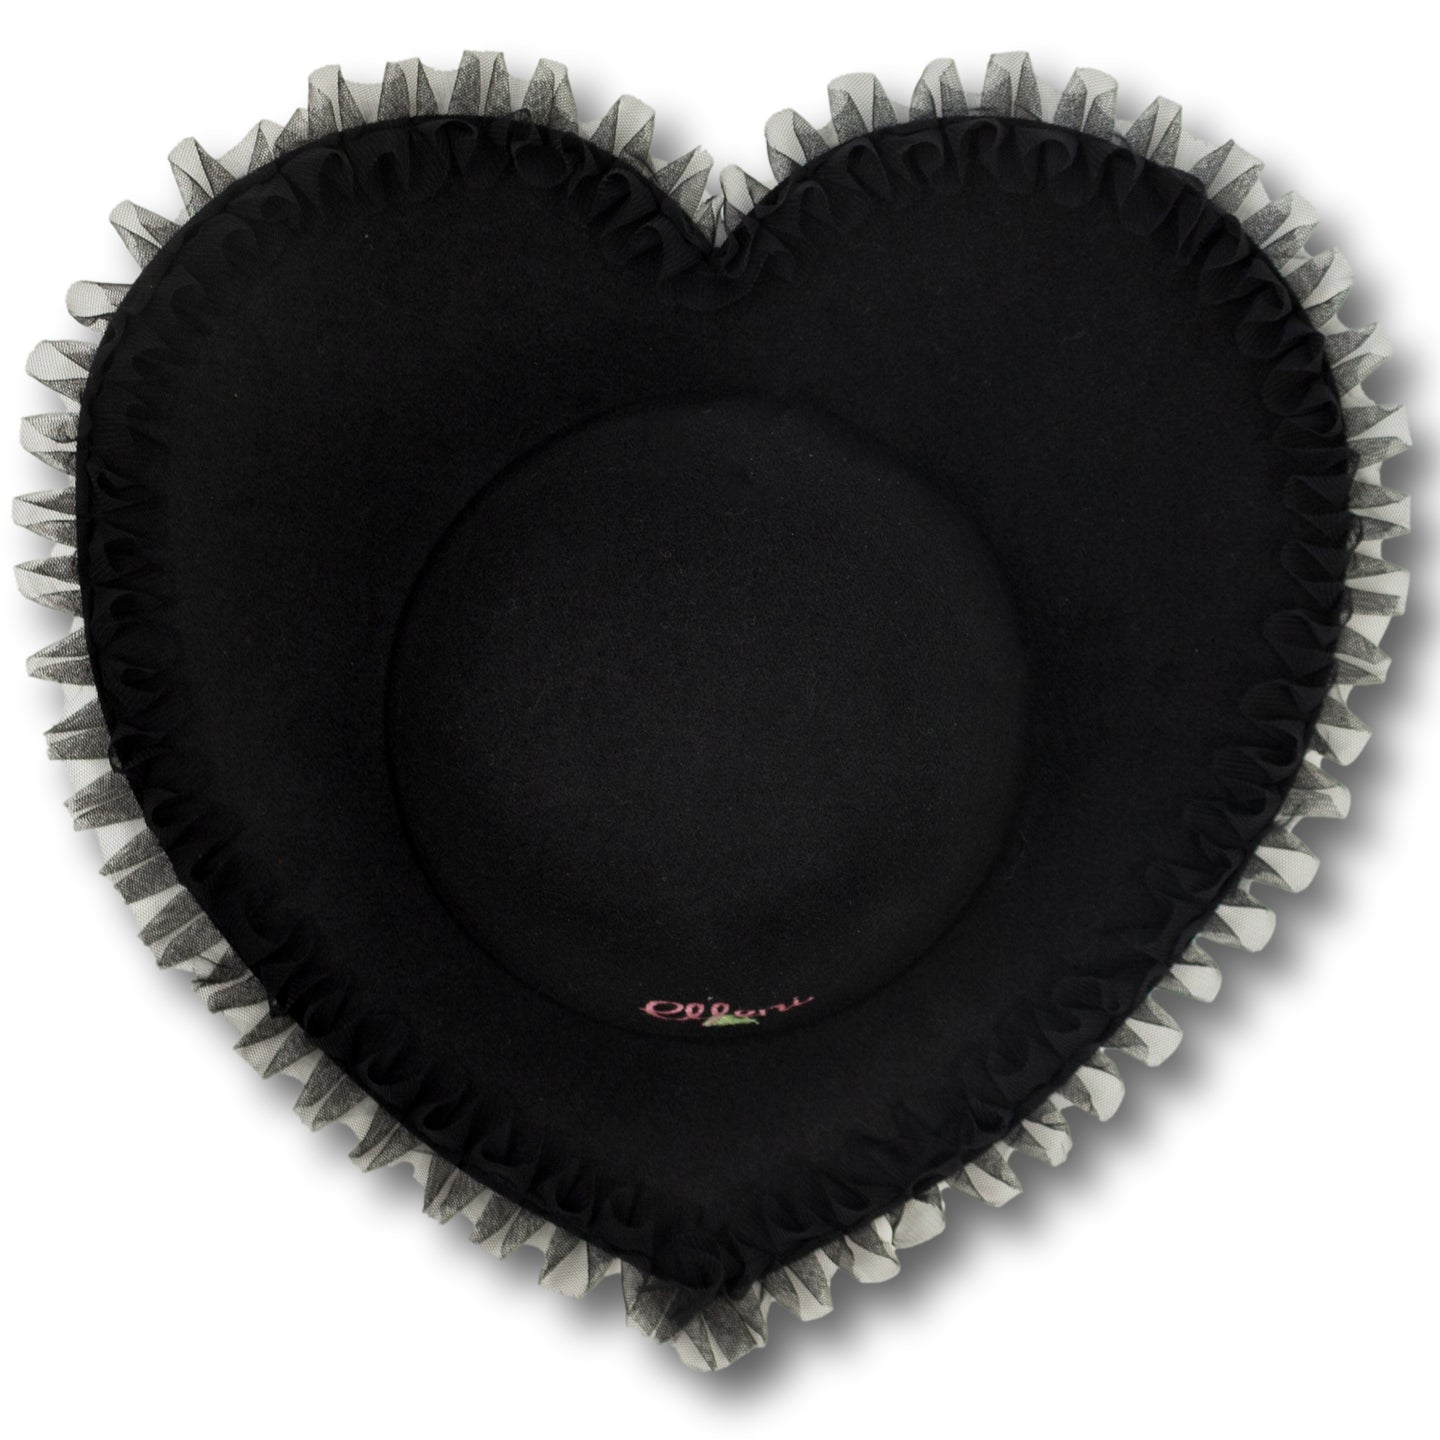 Ruffle Heart Hat in Black